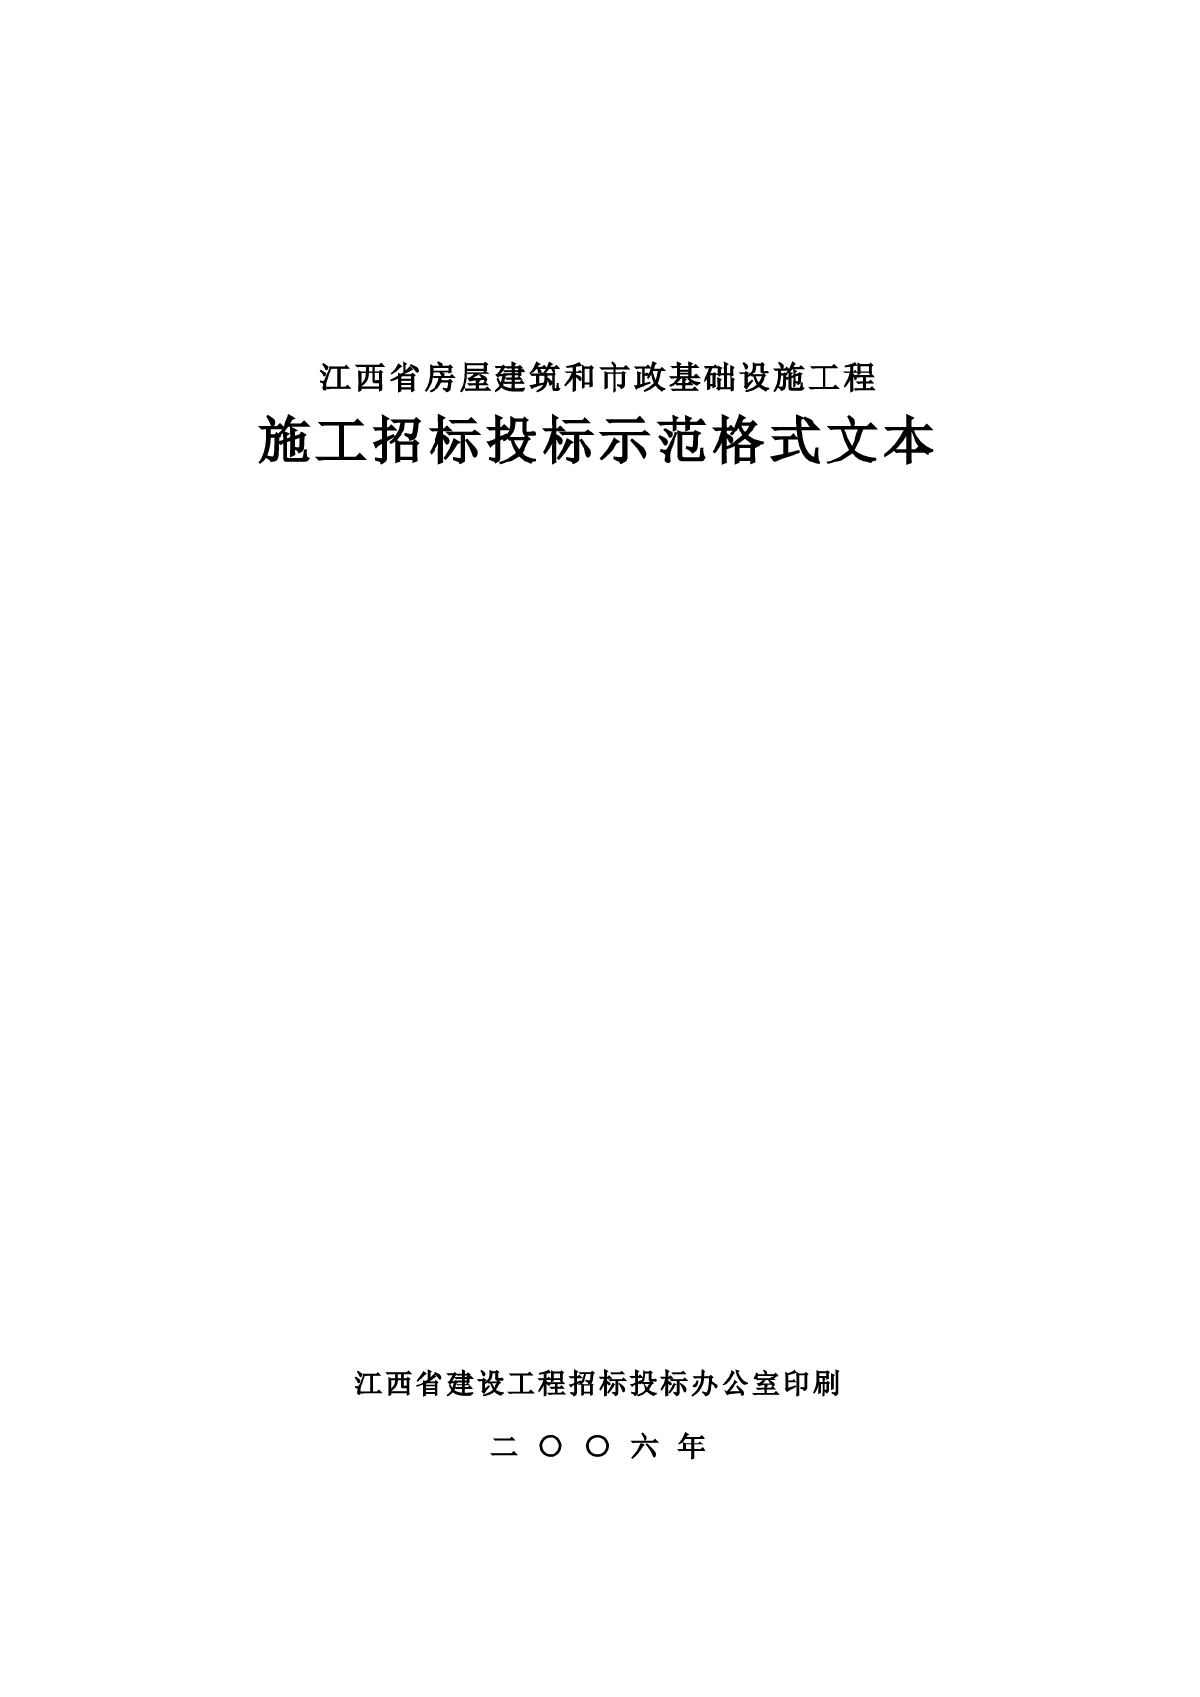 江西省招标投标示范格式文本(2006年)-图一